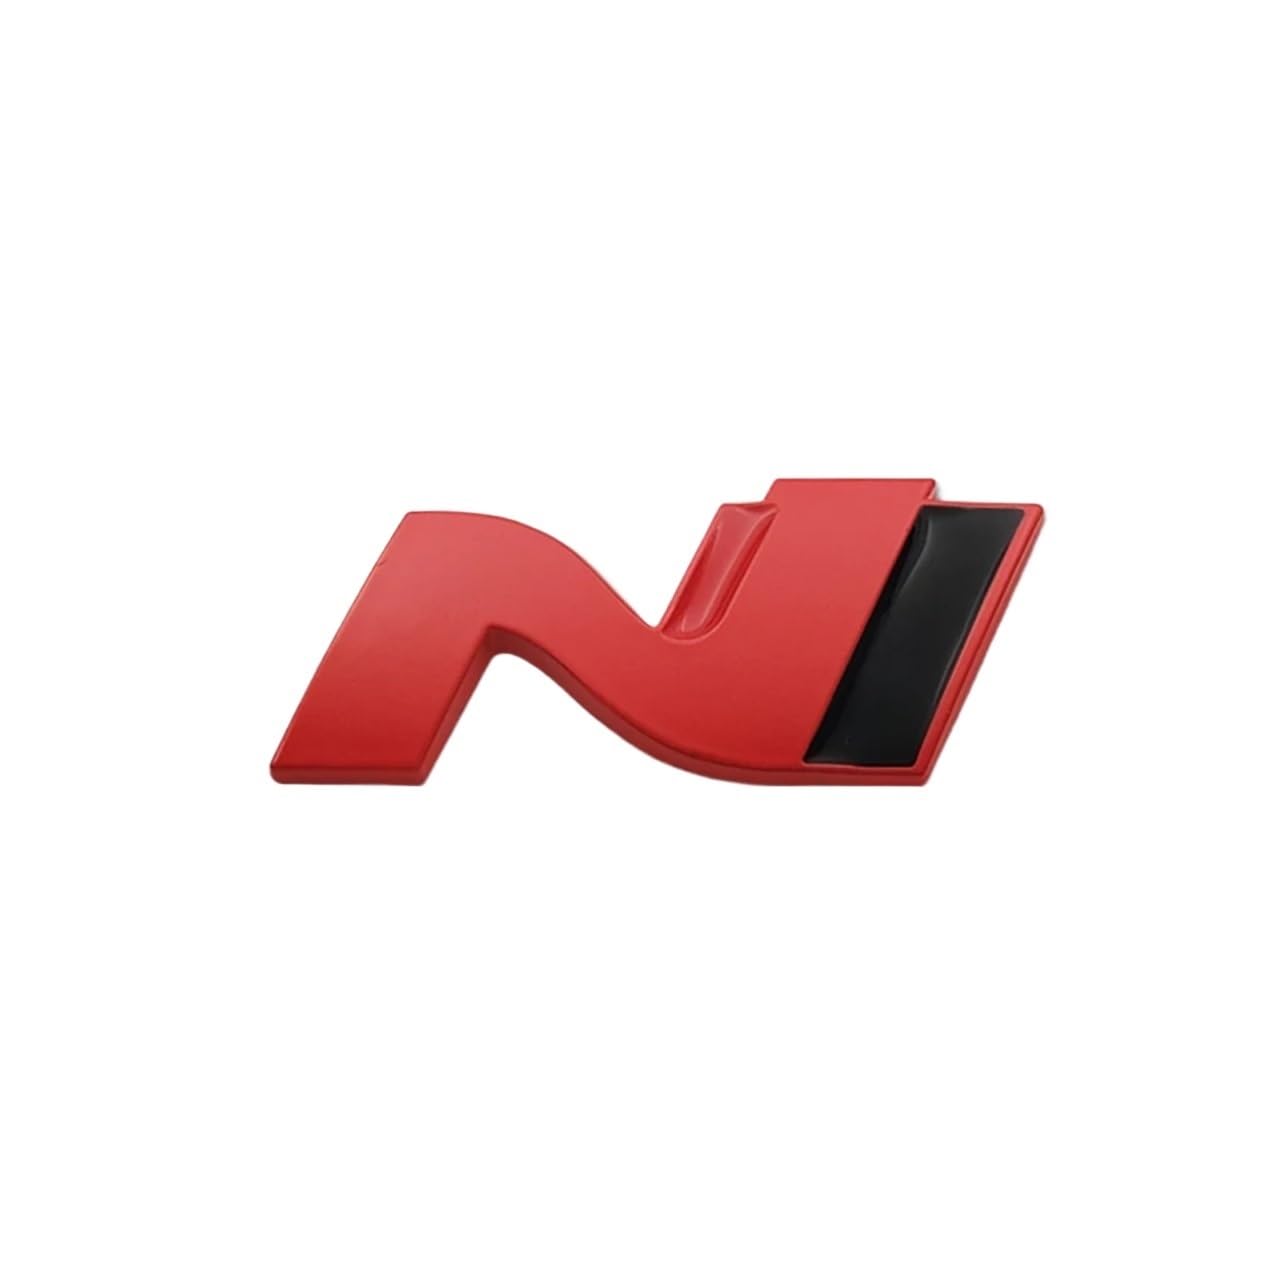 N Line Nline Abzeichen Emblem Aufkleber Frontgrill Kompatibel mit Sonata I30 2021 Elantra Veloster Kona Tucson N Line StylingCar Aufkleber(Red) von NRUOS